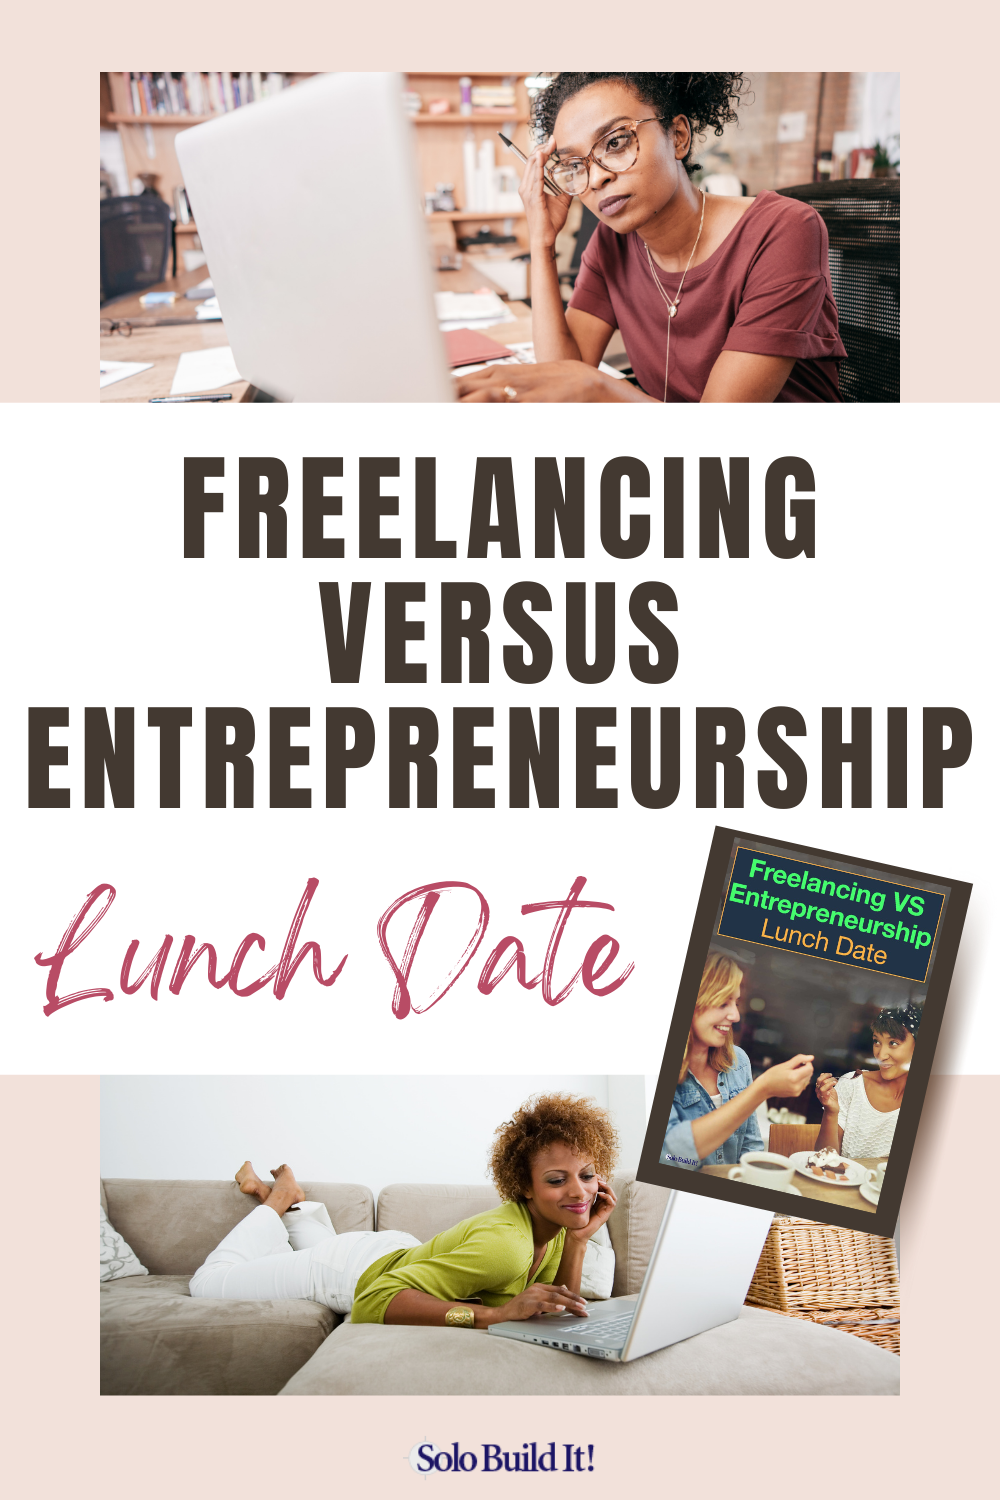 The Freelancing vs Entrepreneurship Lunch Date